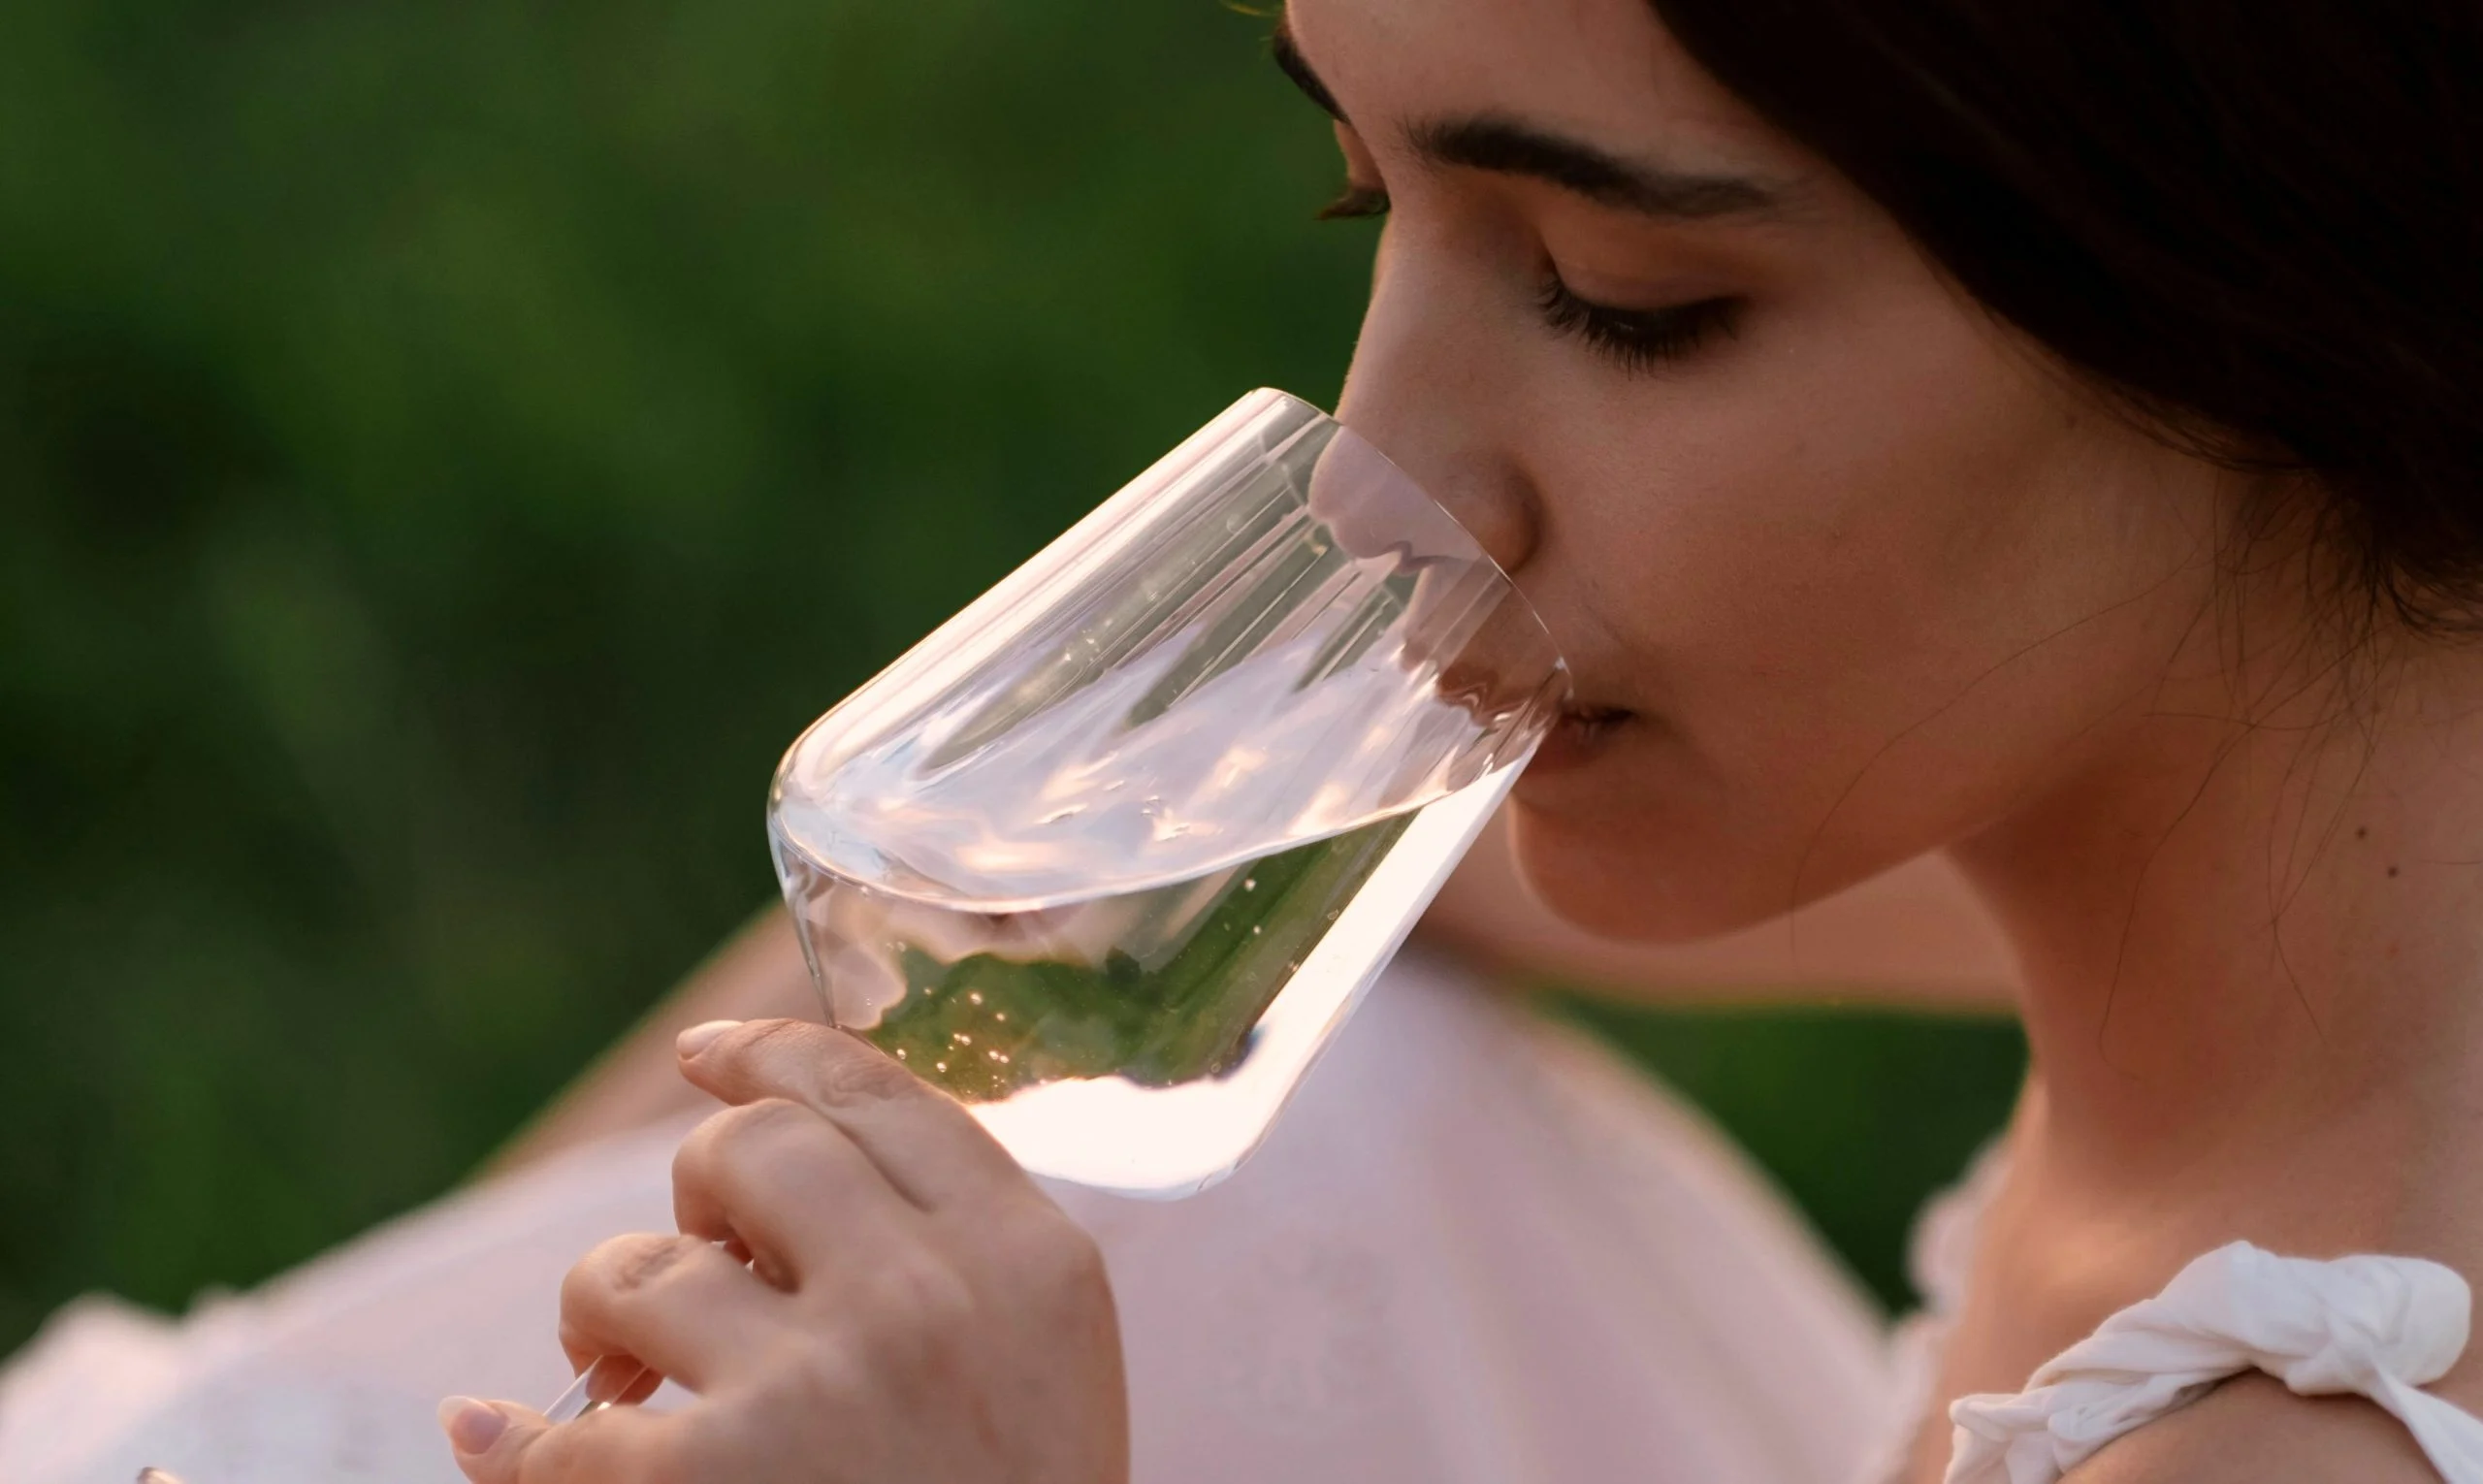 Cómo catar vinos como un experto: el paso a paso